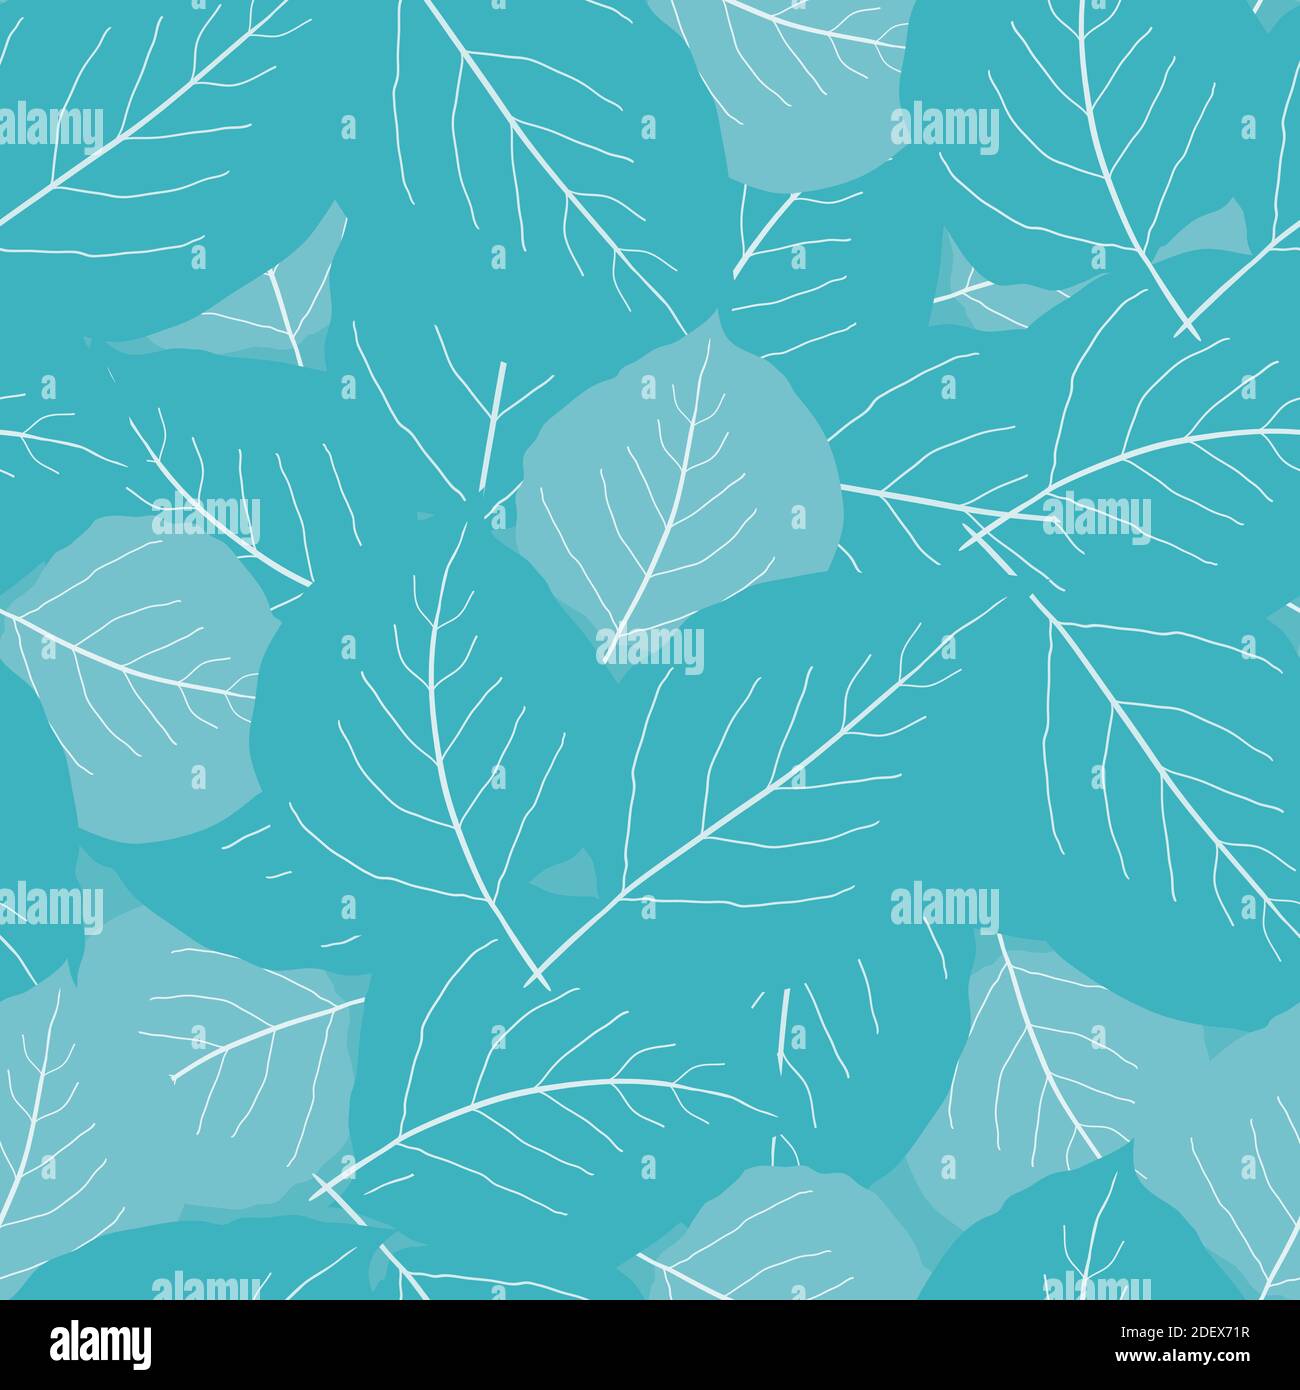 Fond monochrome de motif vectoriel transparent aux feuilles de peuplier faux-tremble bleu ciel. Chevauchement de feuilles dessinées à la main dispersées toile de fond abstraite de texture. Botanique Illustration de Vecteur